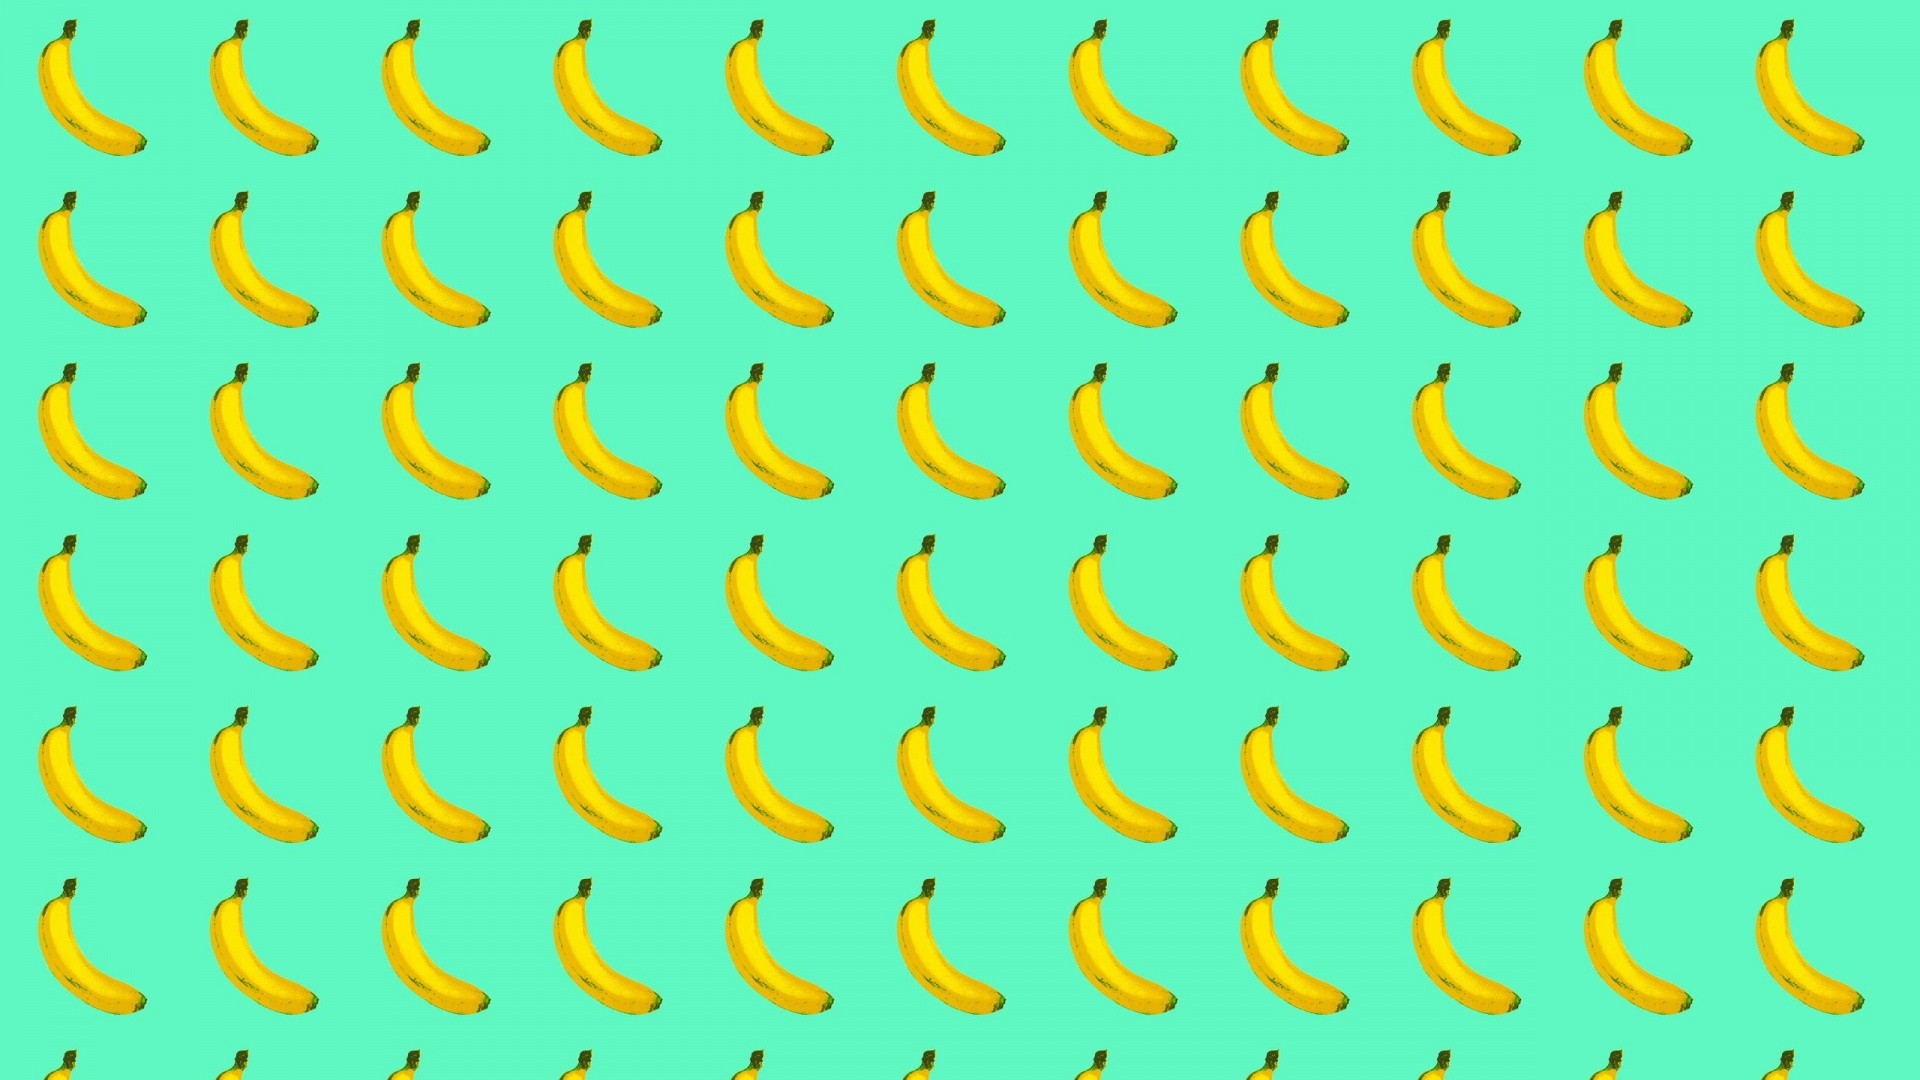 Banana Wallpaper image hd